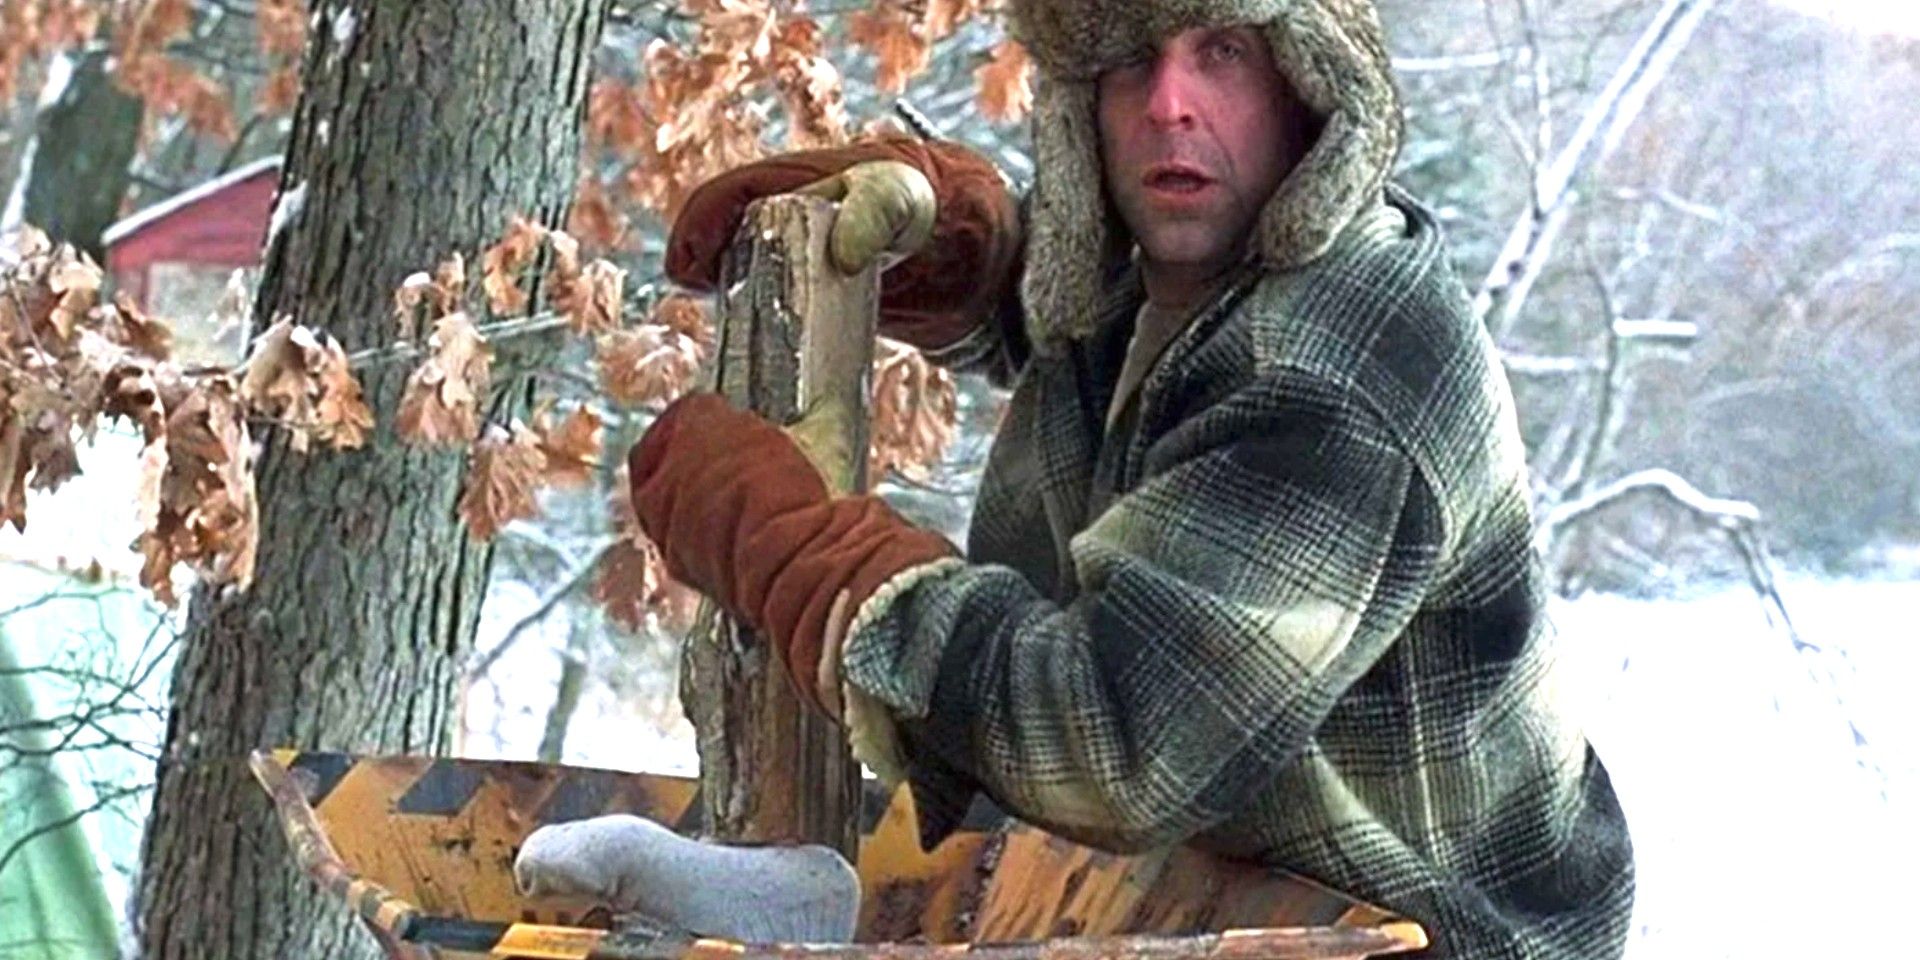 The woodchipper in Fargo